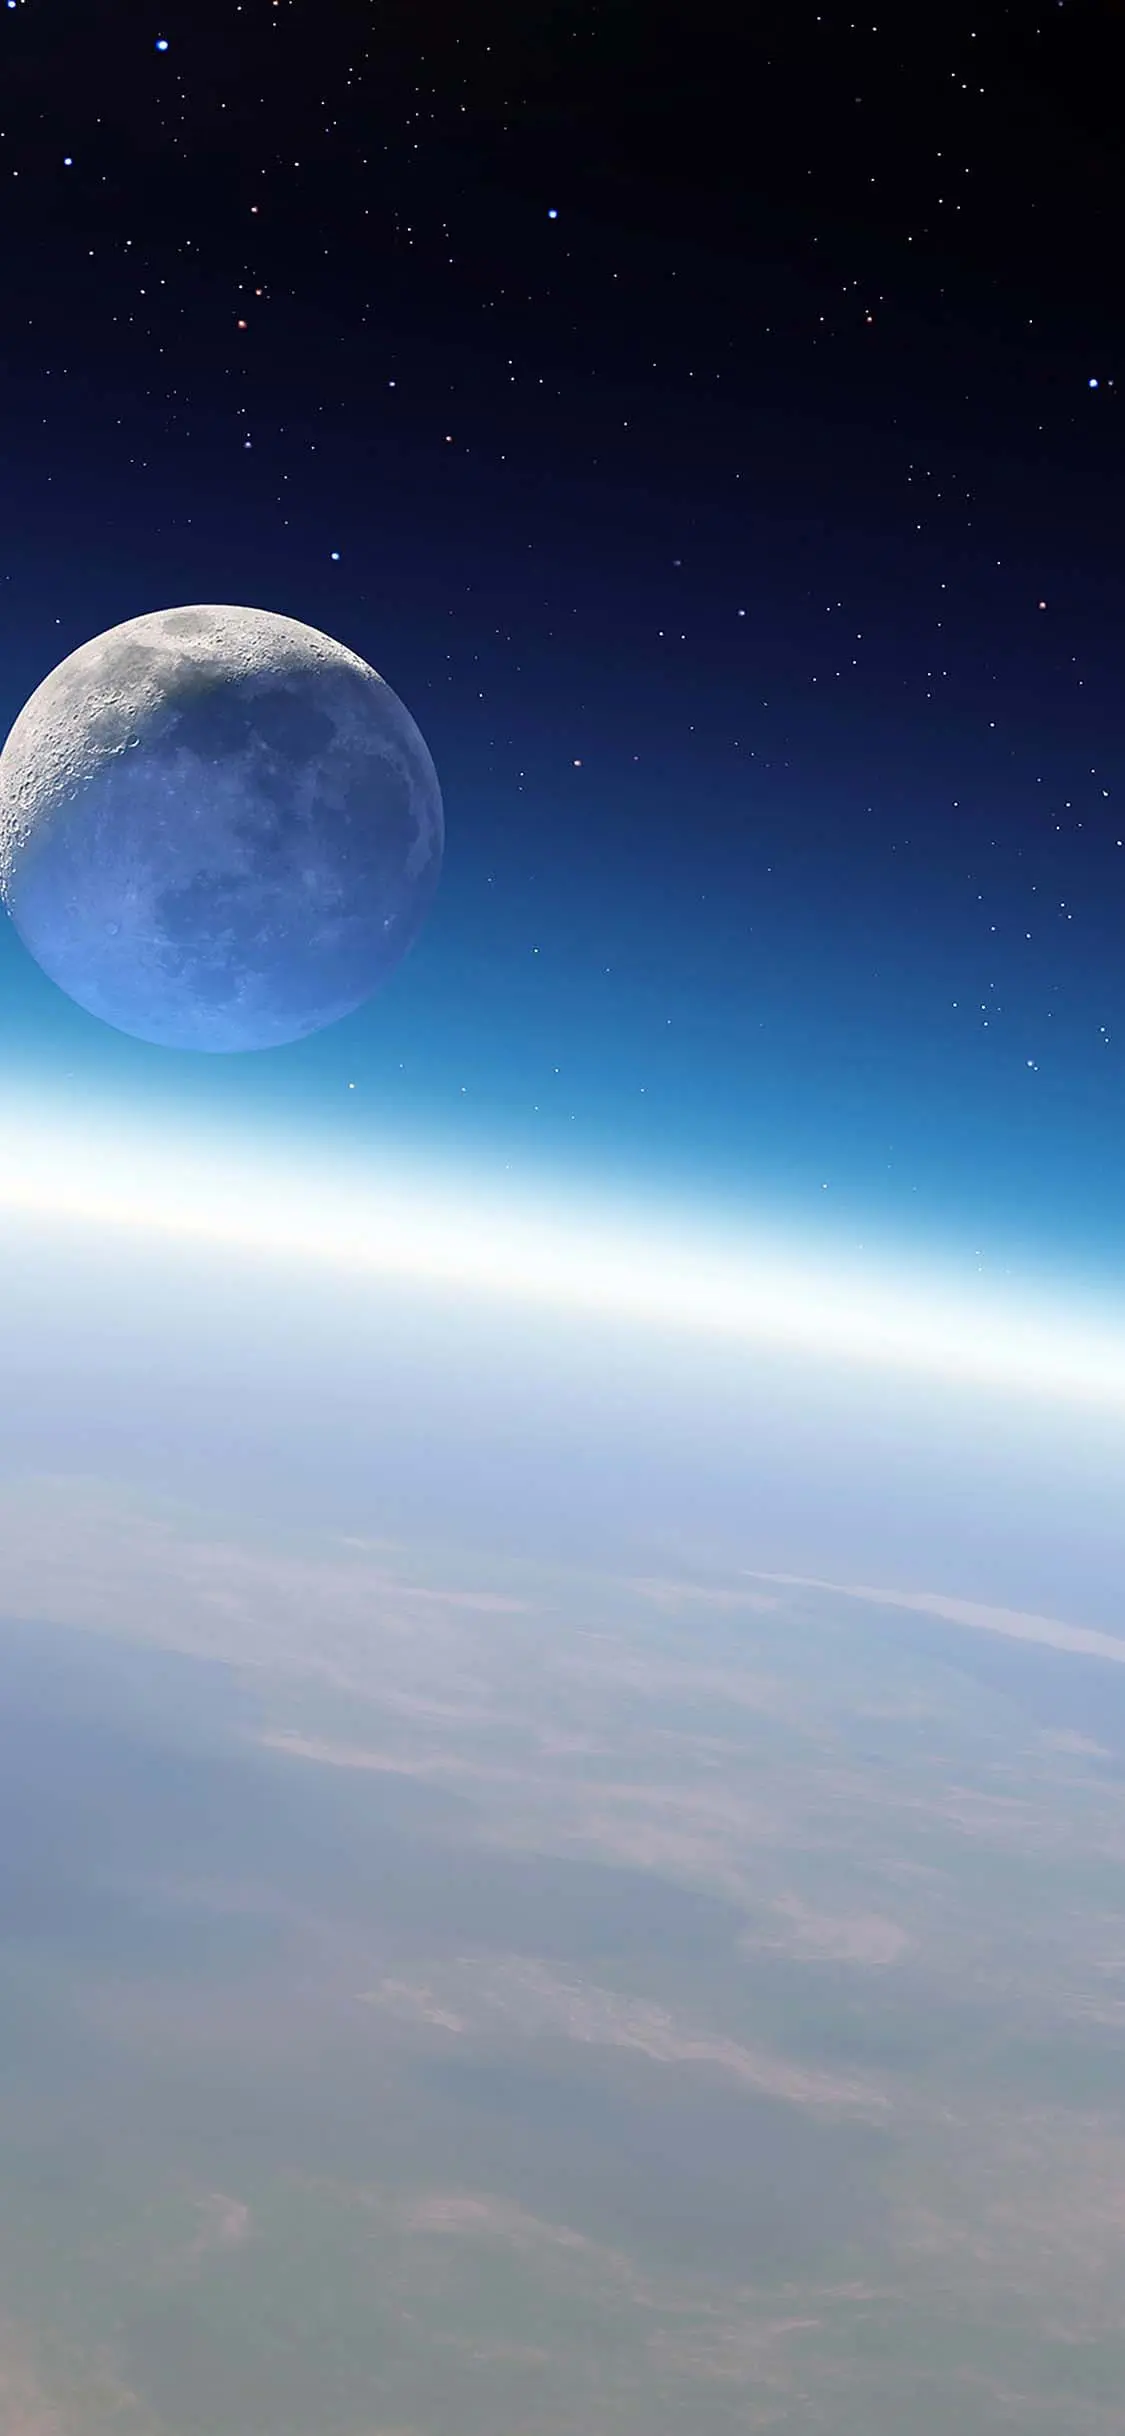 القمر في الفضاء خلفية ايفون اكس